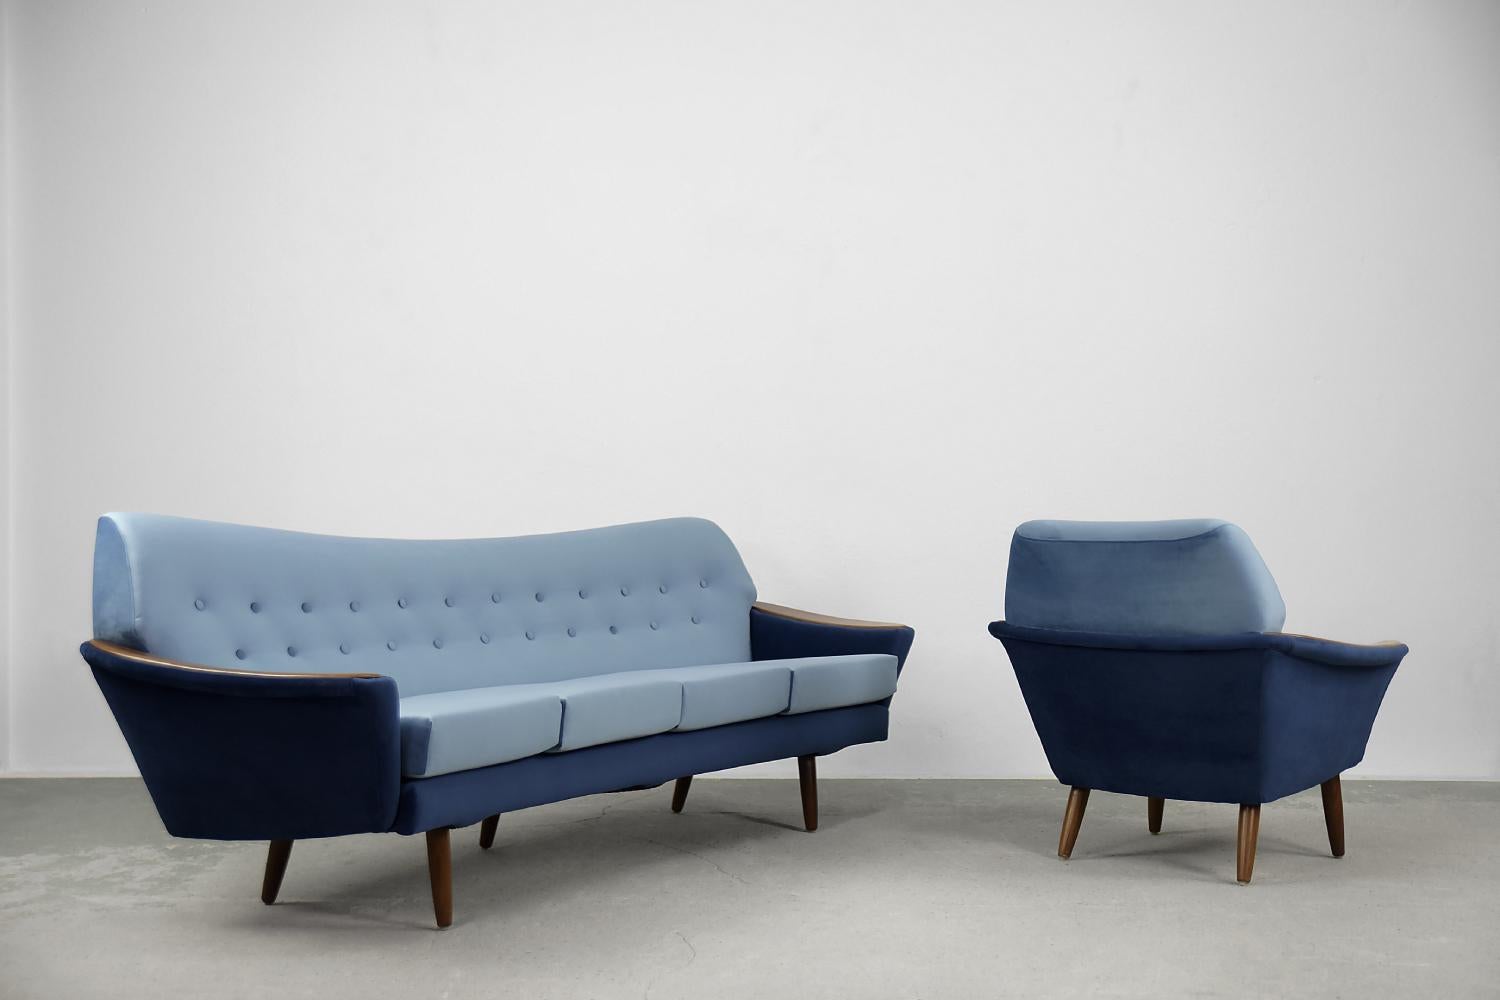 Ce rare ensemble de salon moderniste a été fabriqué par le fabricant suédois Holm Fabrikant AB au début des années 1960. Il se compose d'un canapé à quatre places et d'un fauteuil. Il était revêtu d'un tissu en velours de la plus haute qualité, dans